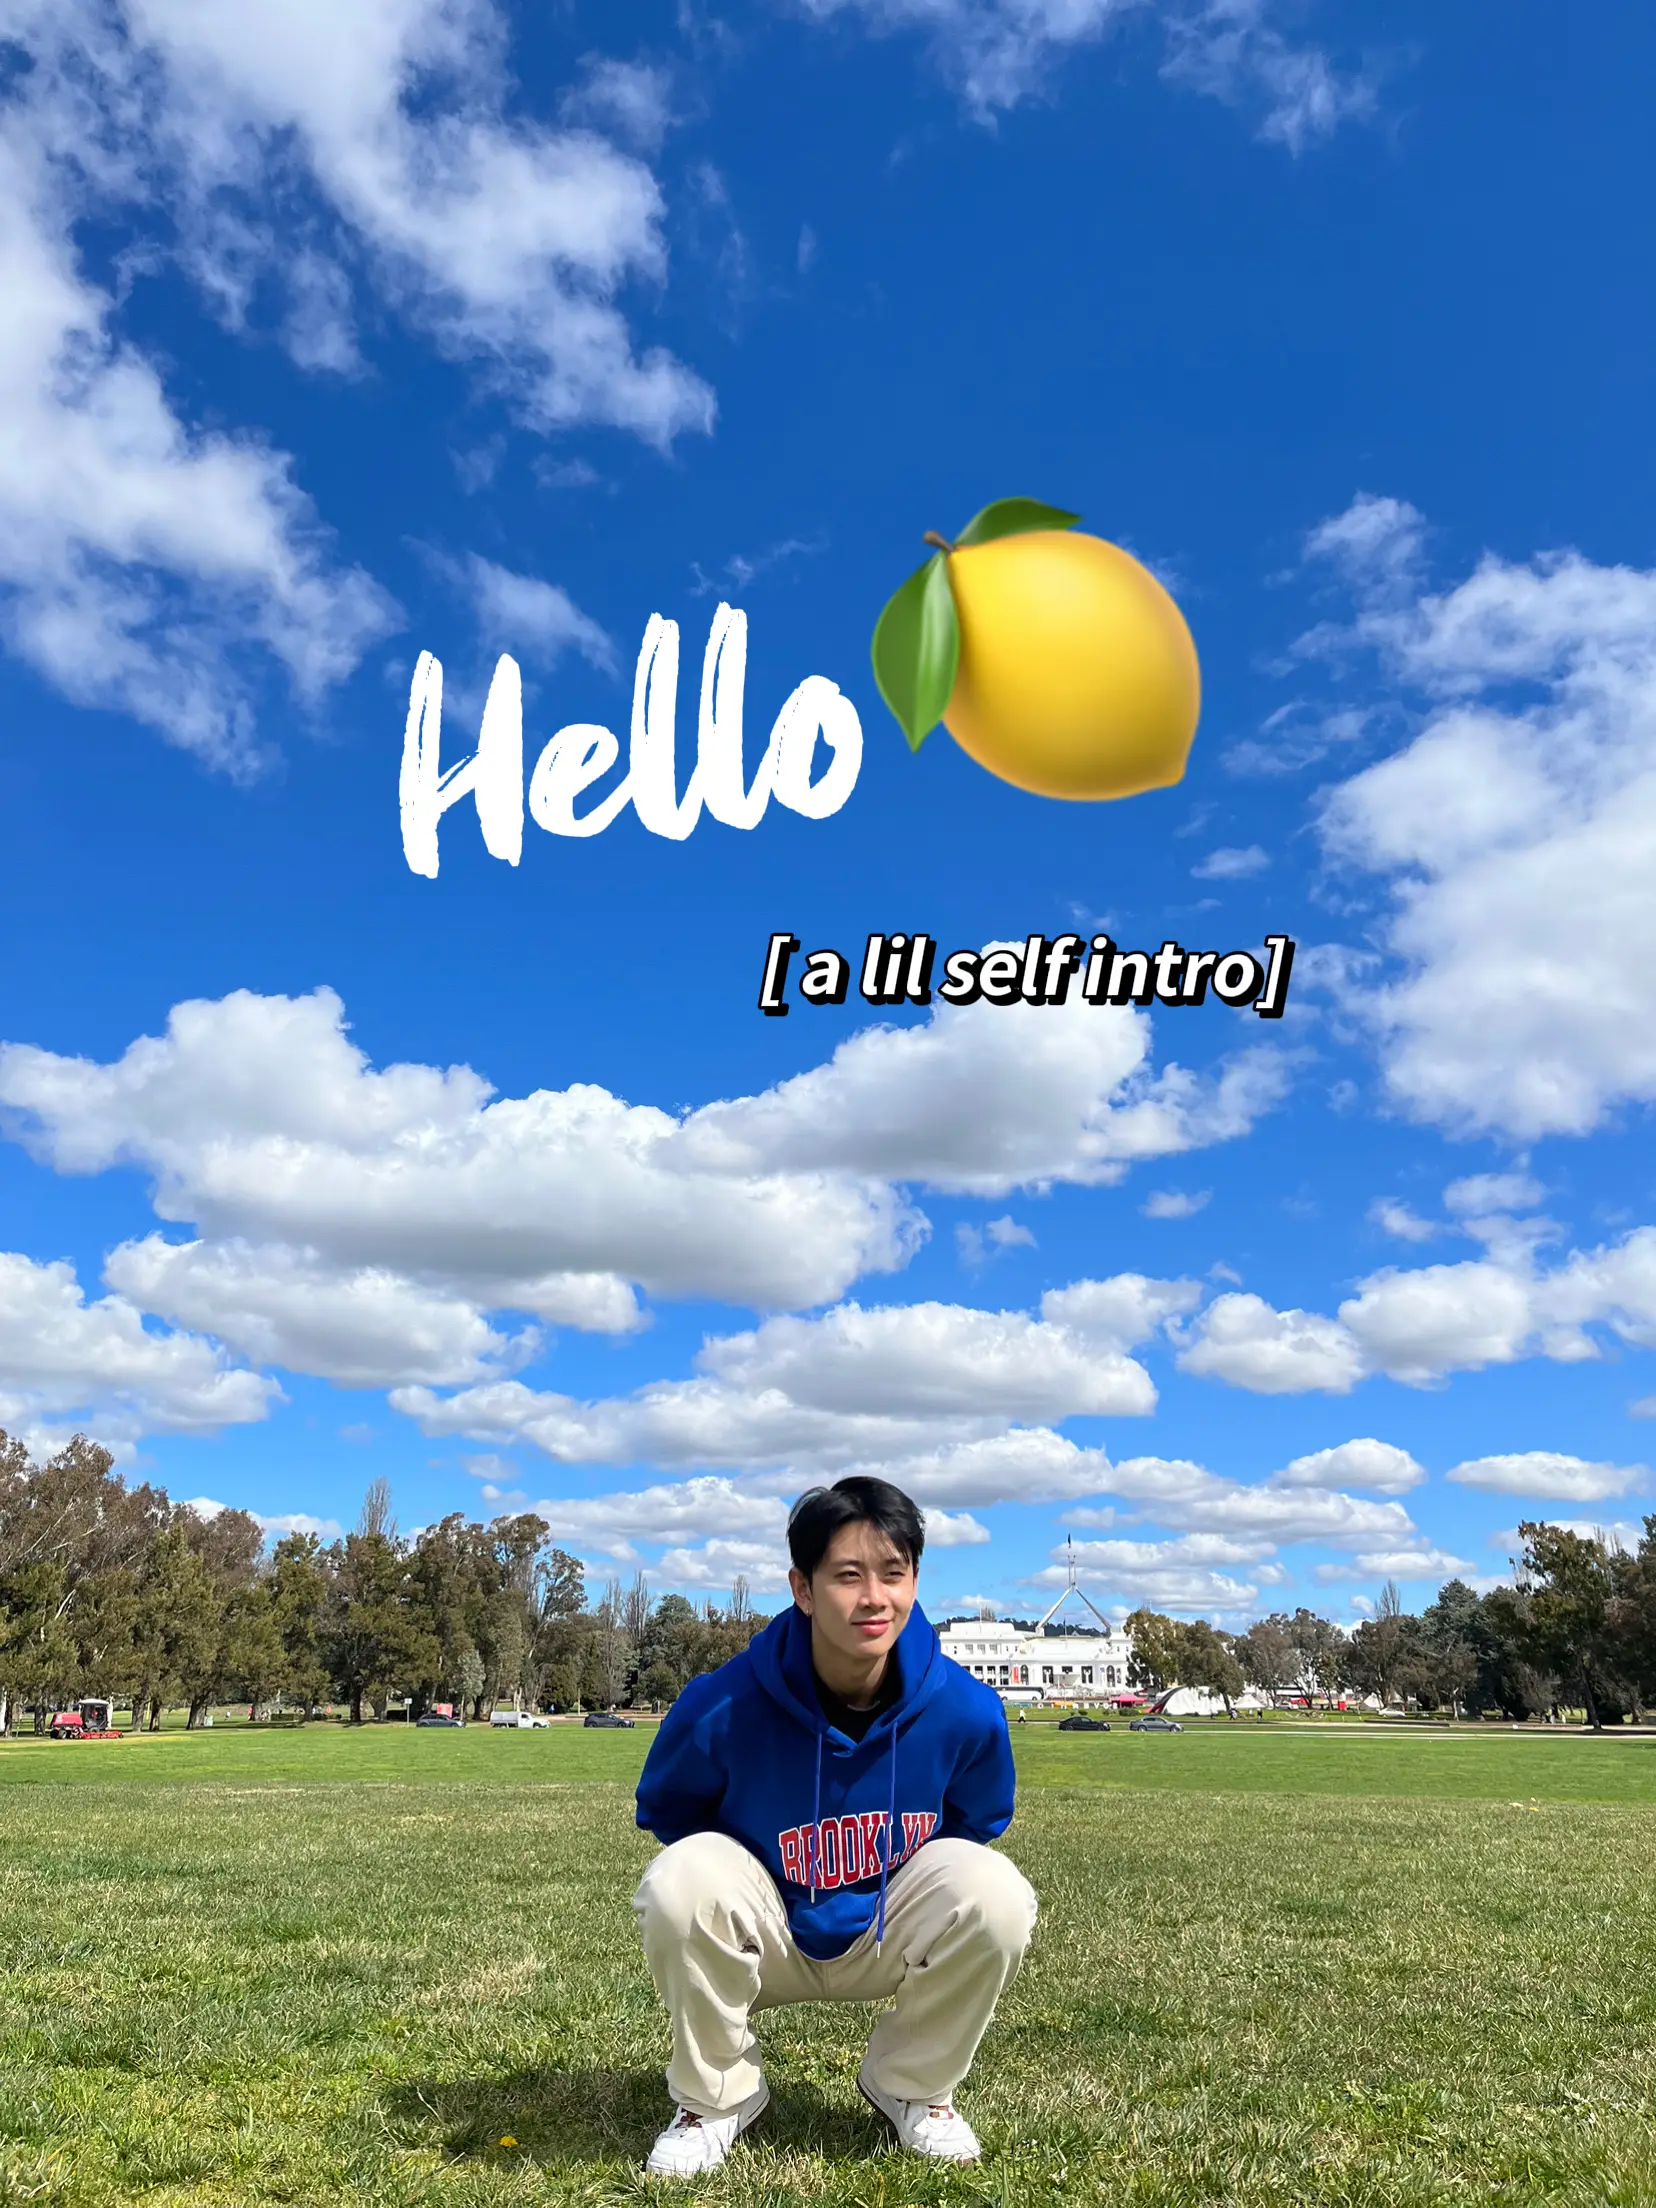 HELLOLULU - Lemon8 Search